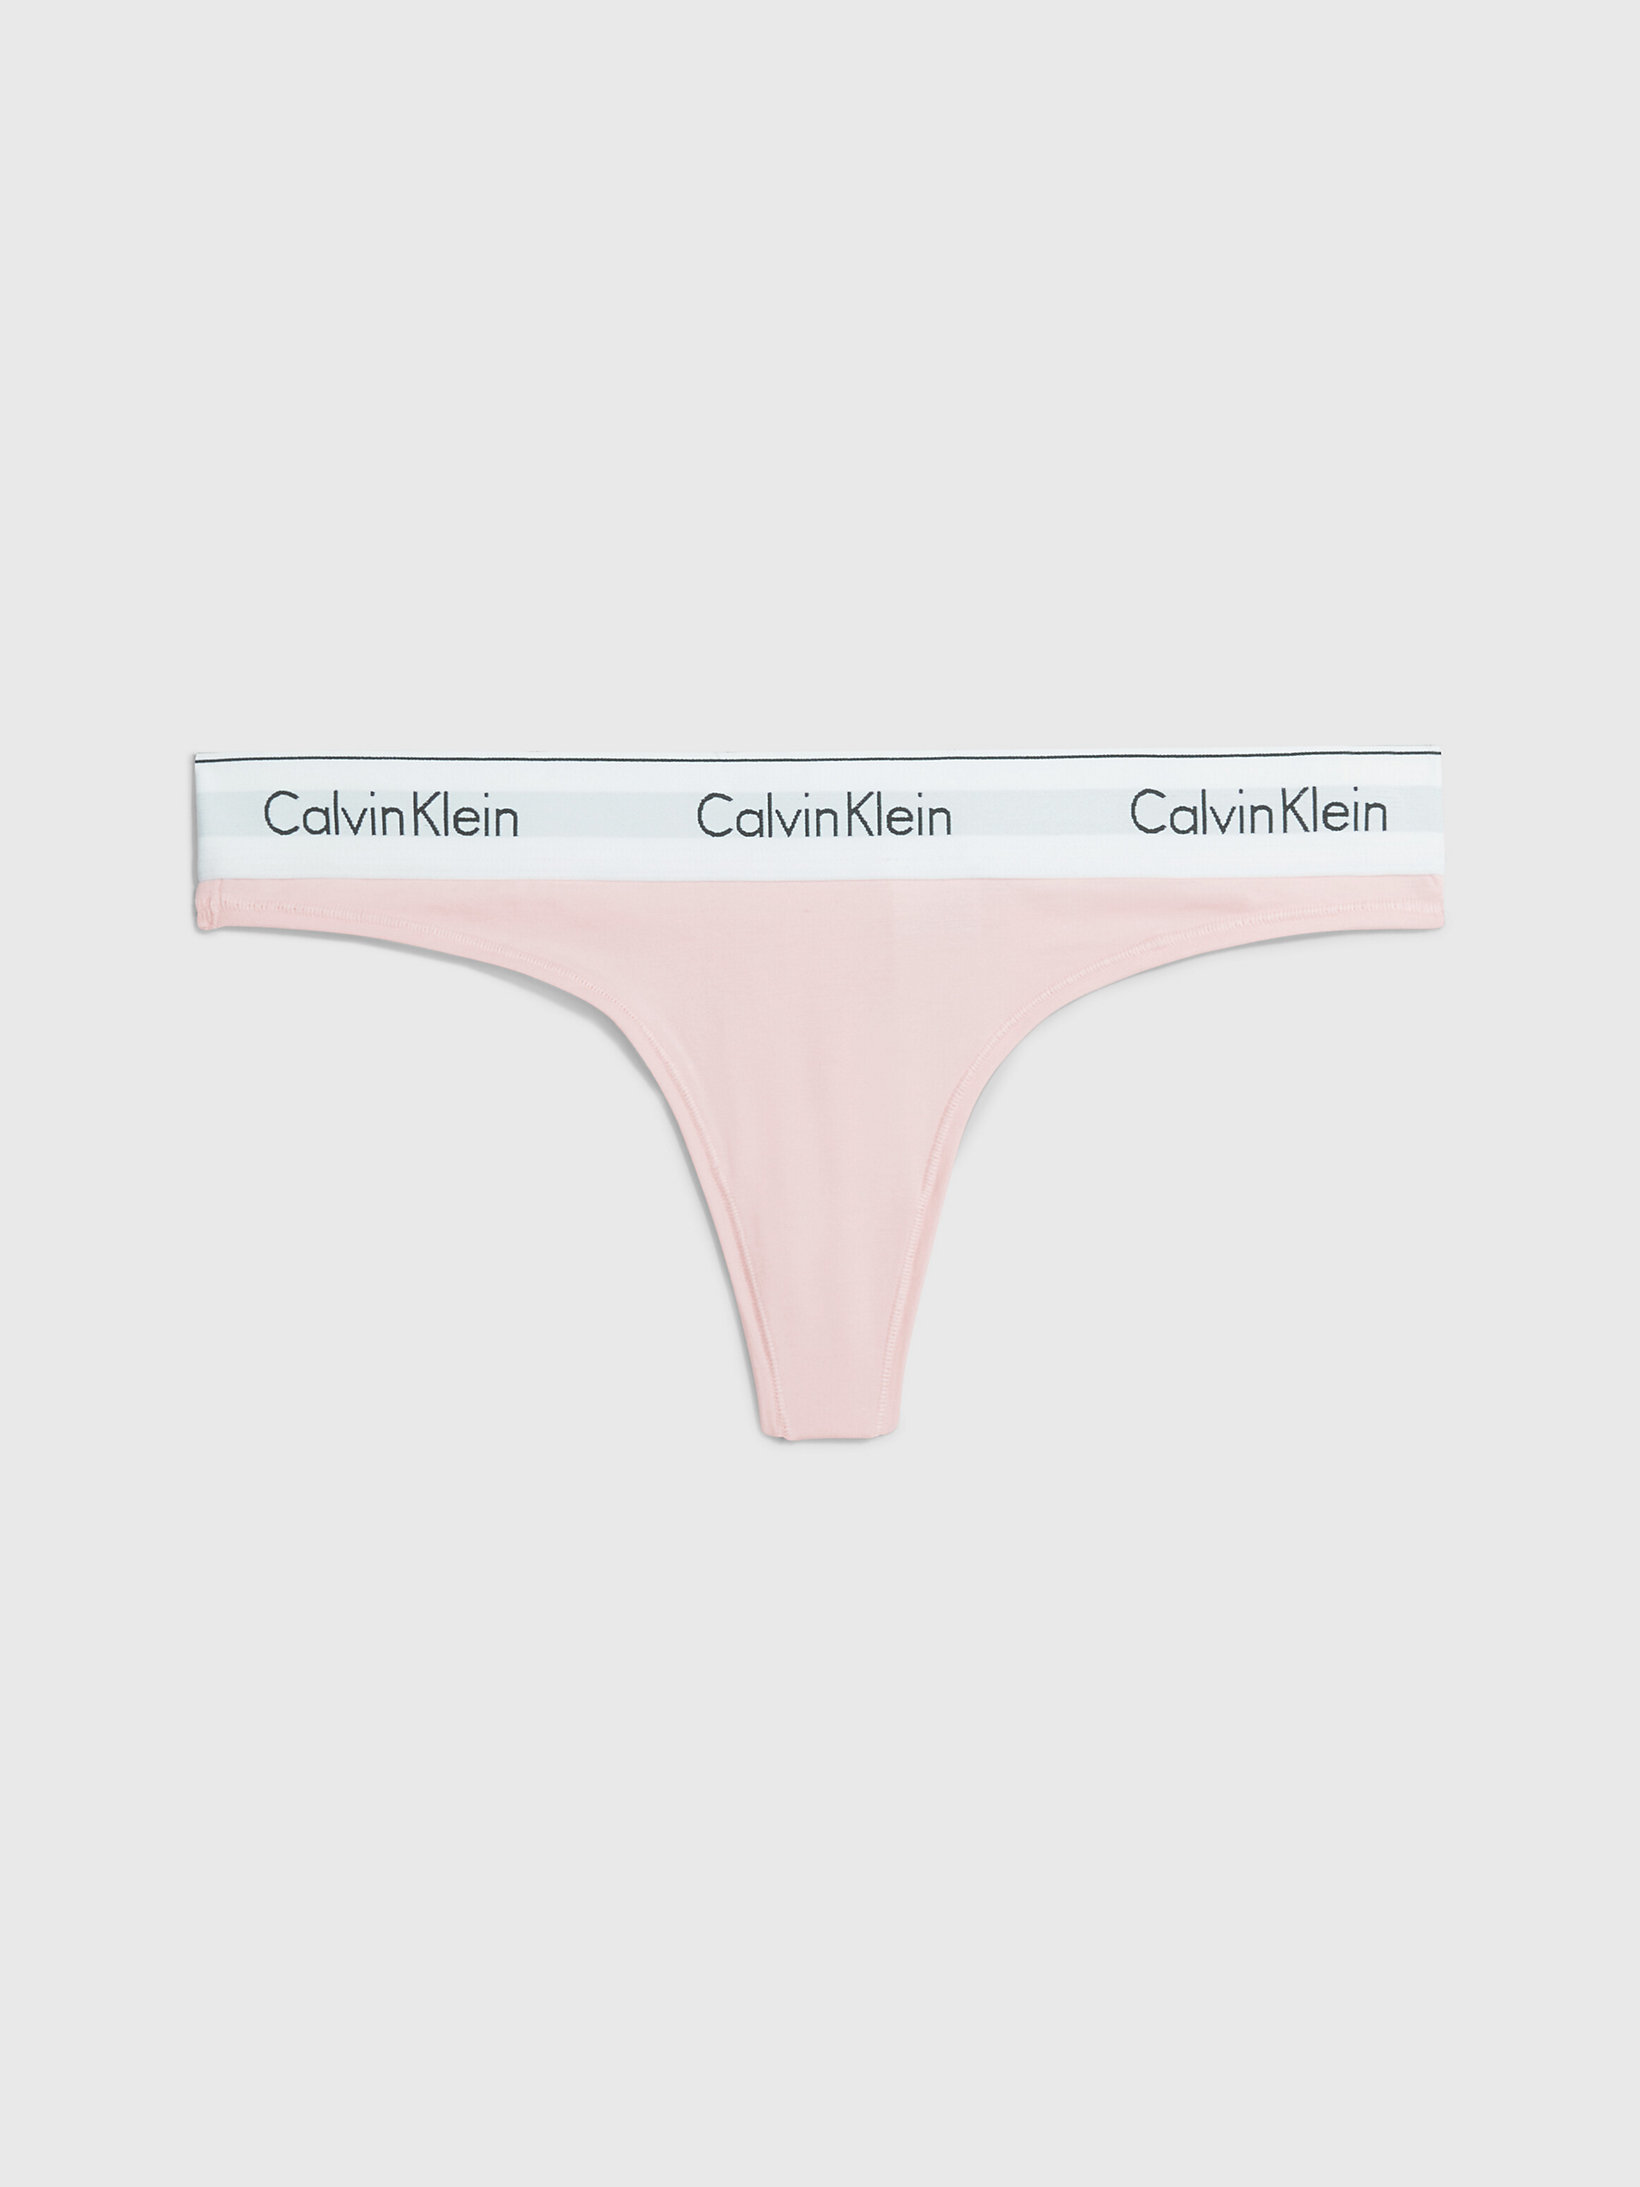 String - Modern Cotton > Nymphs Thigh > undefined femmes > Calvin Klein